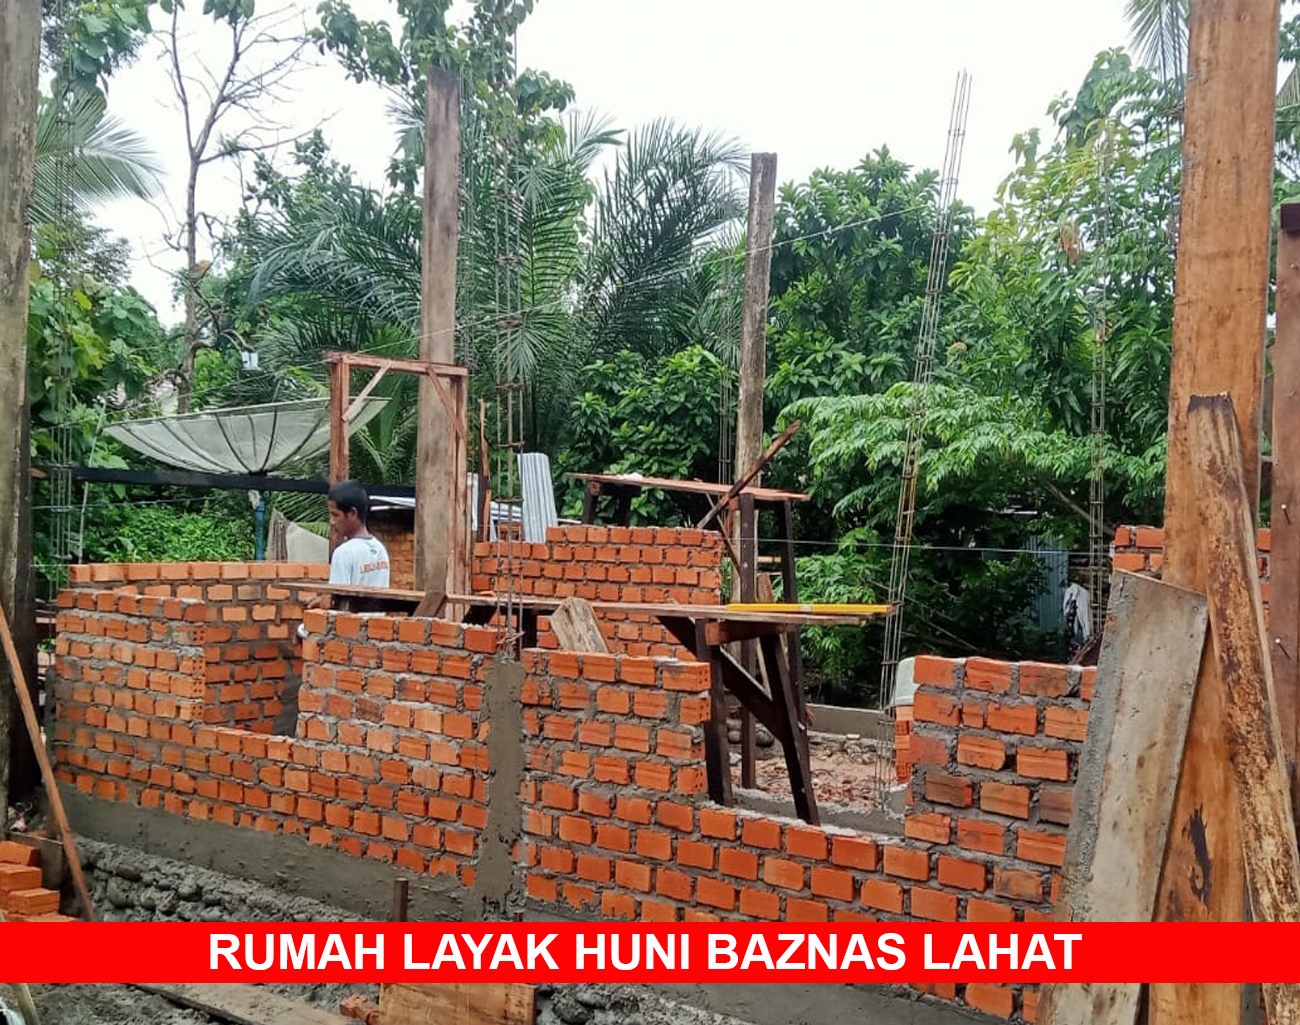 Inilah Perkembangan Pembangunan Rumah Layak Huni Baznas Lahat di Tanjung Payang